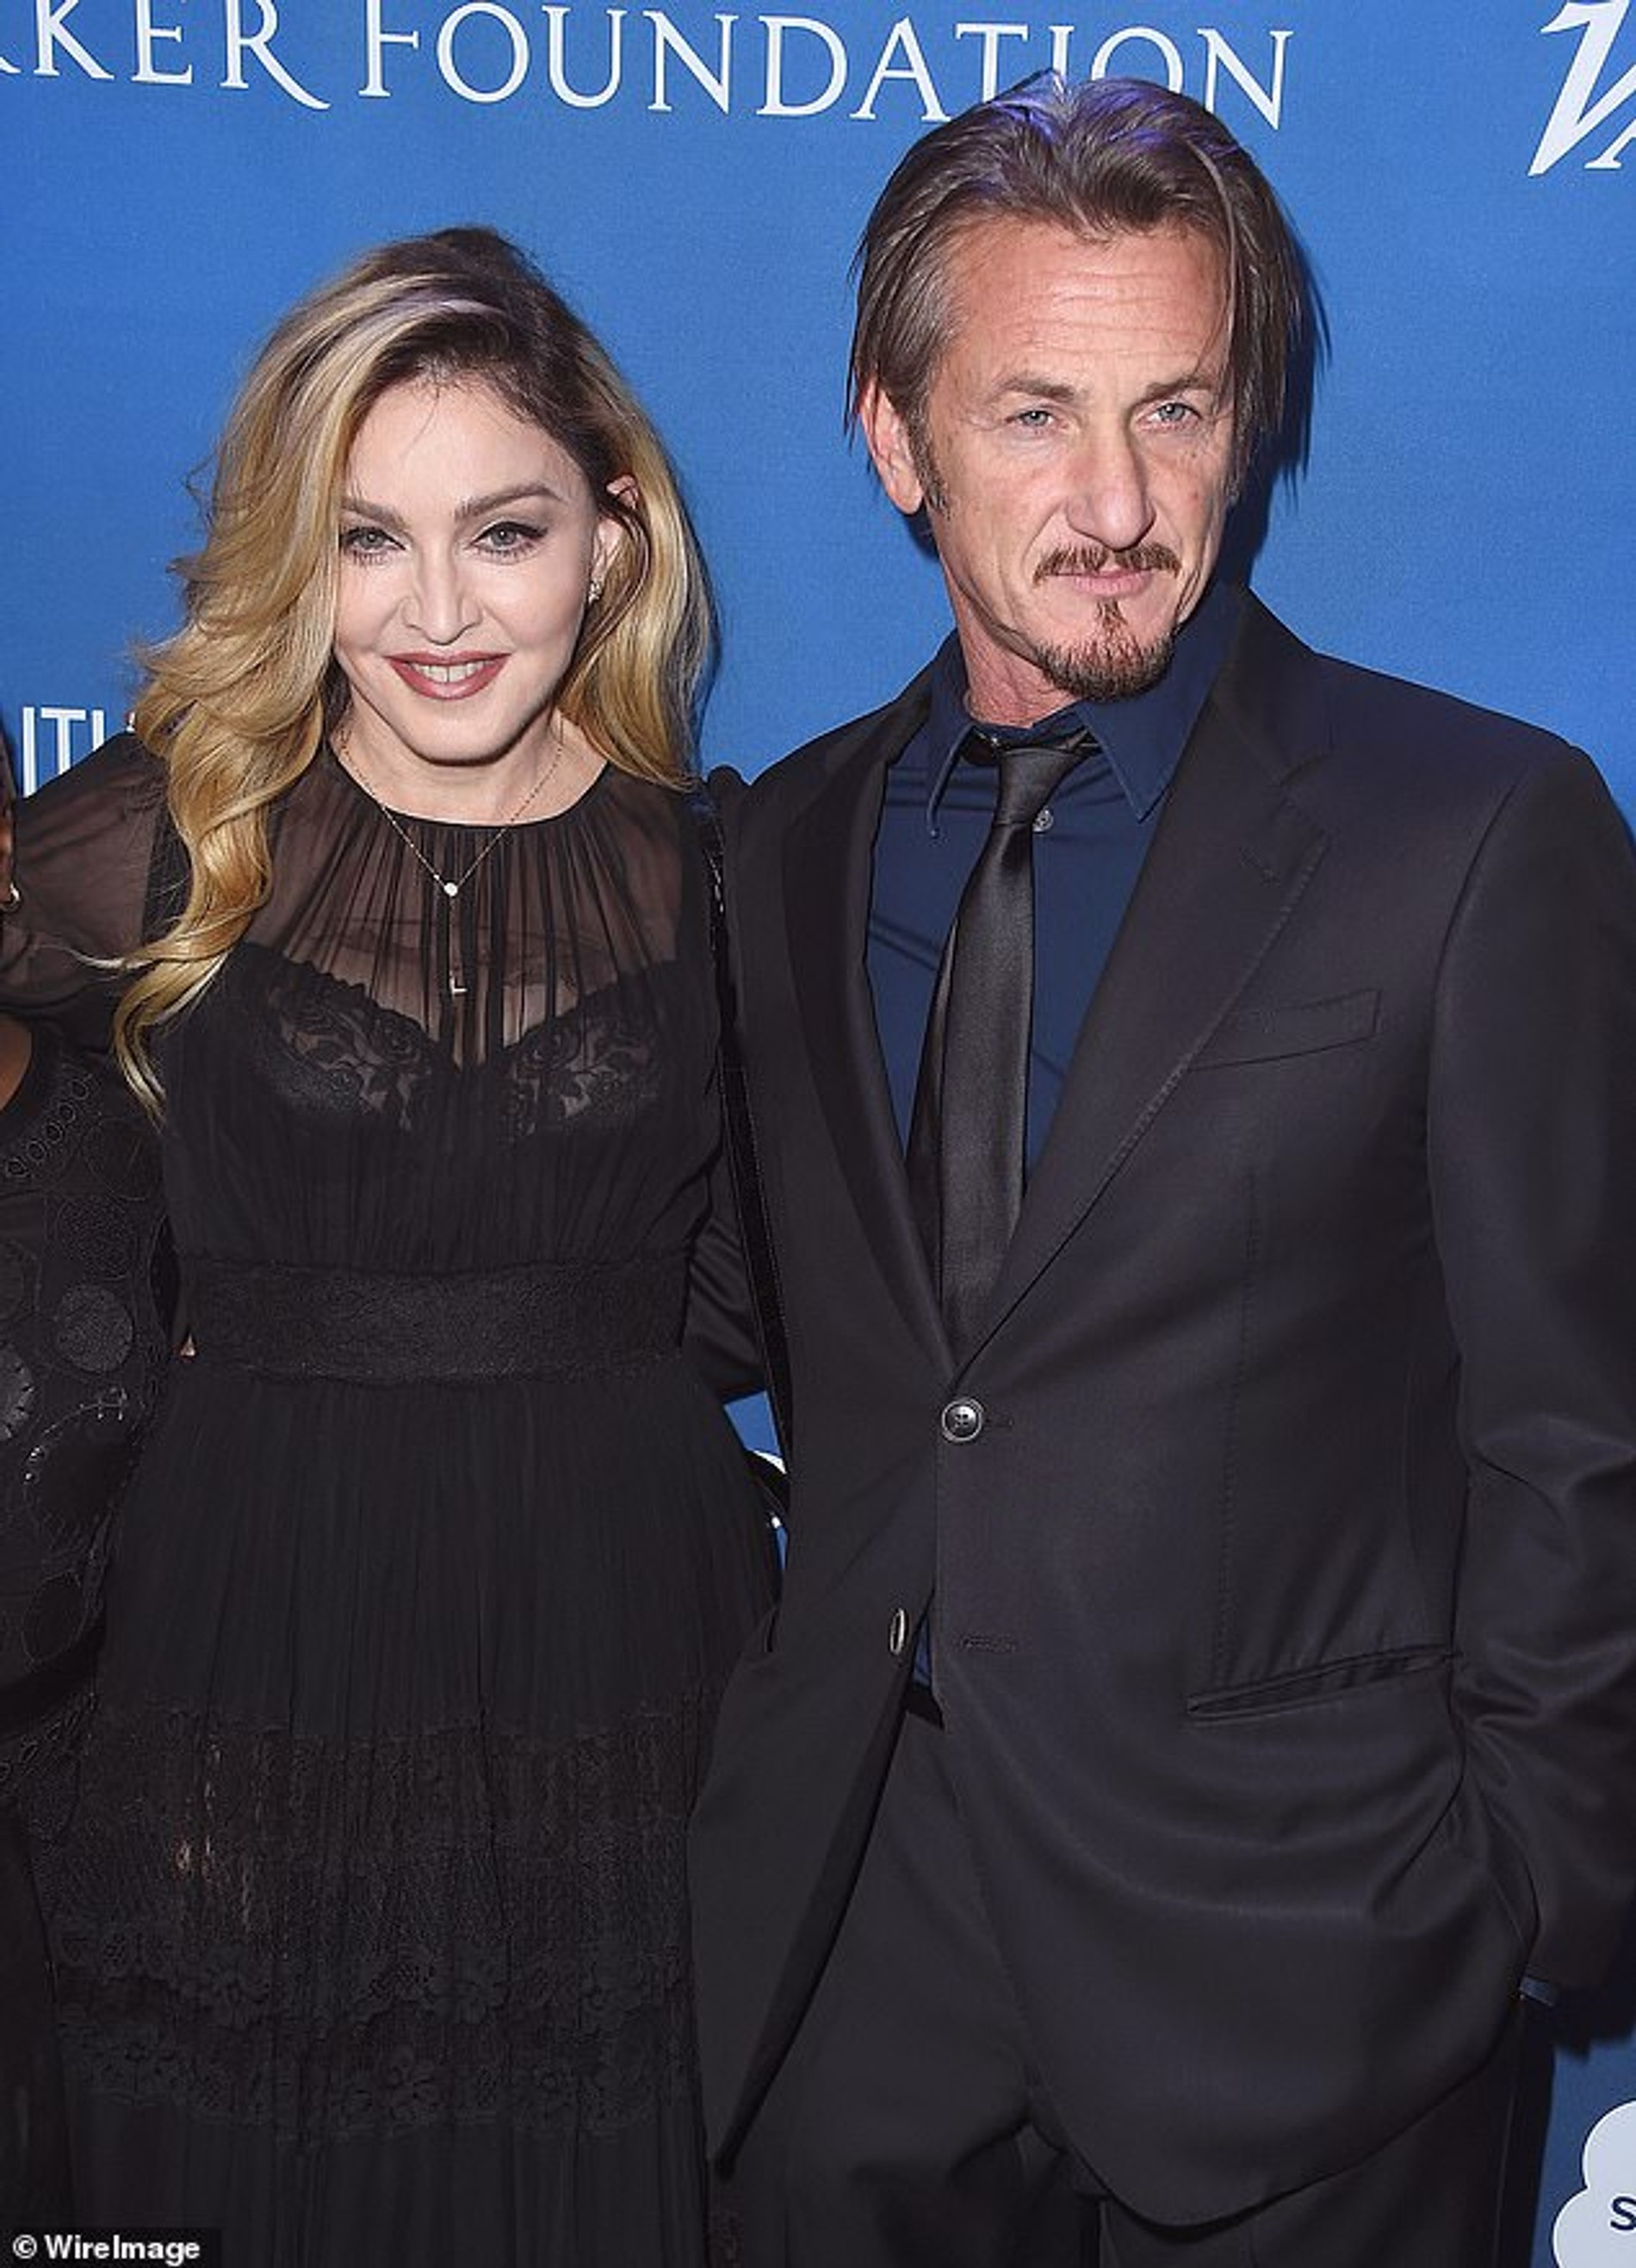 Фото: Daily Mail
Мадонна и Шон Пенн